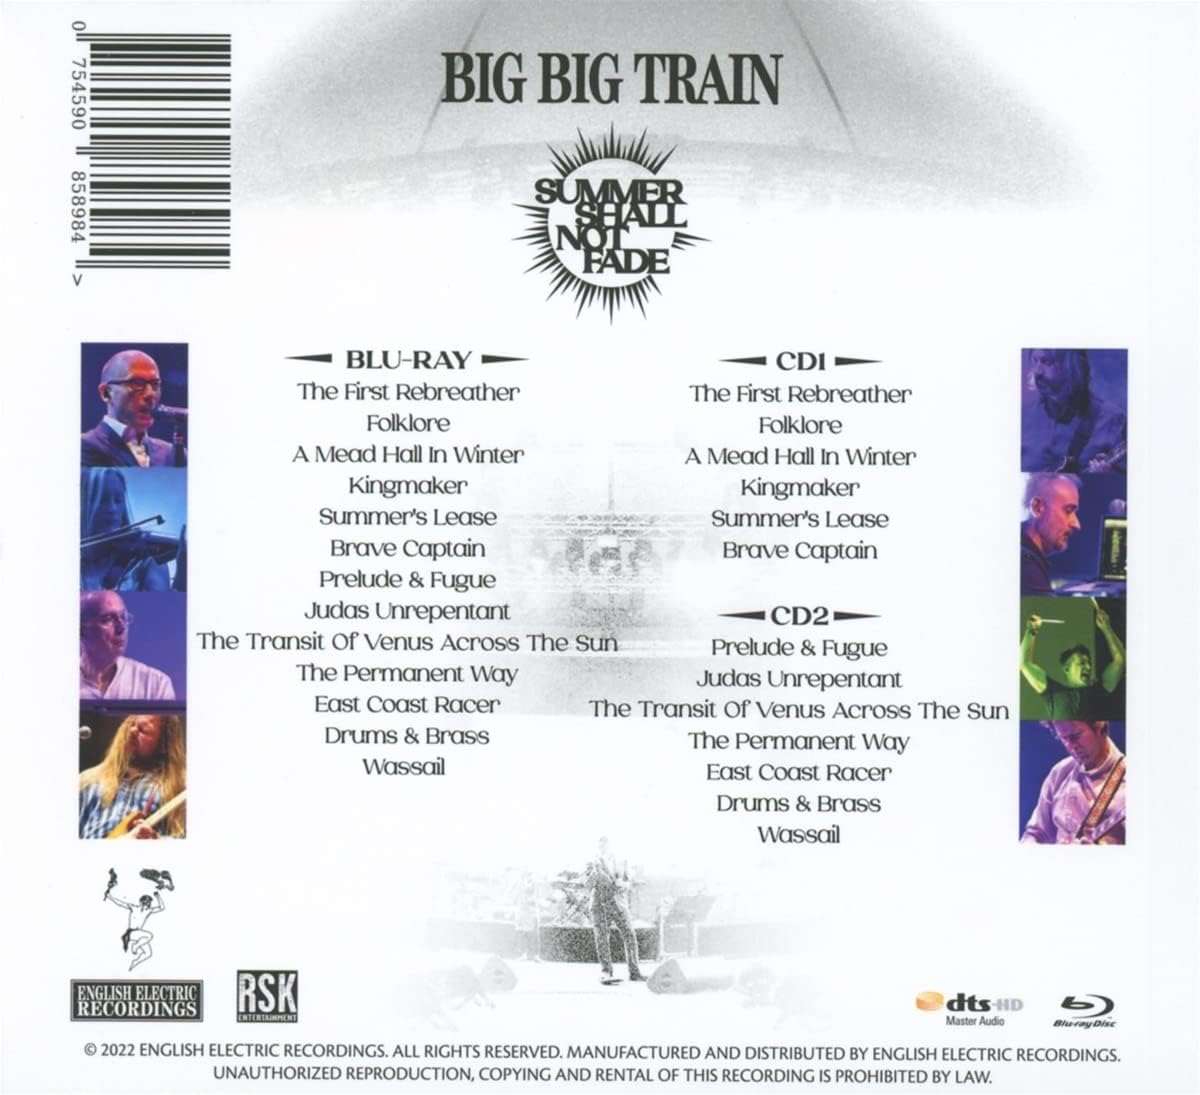 Big Big Train - Summer Shall Not Fade - Live At Loreley : 2CD + Blu-ray